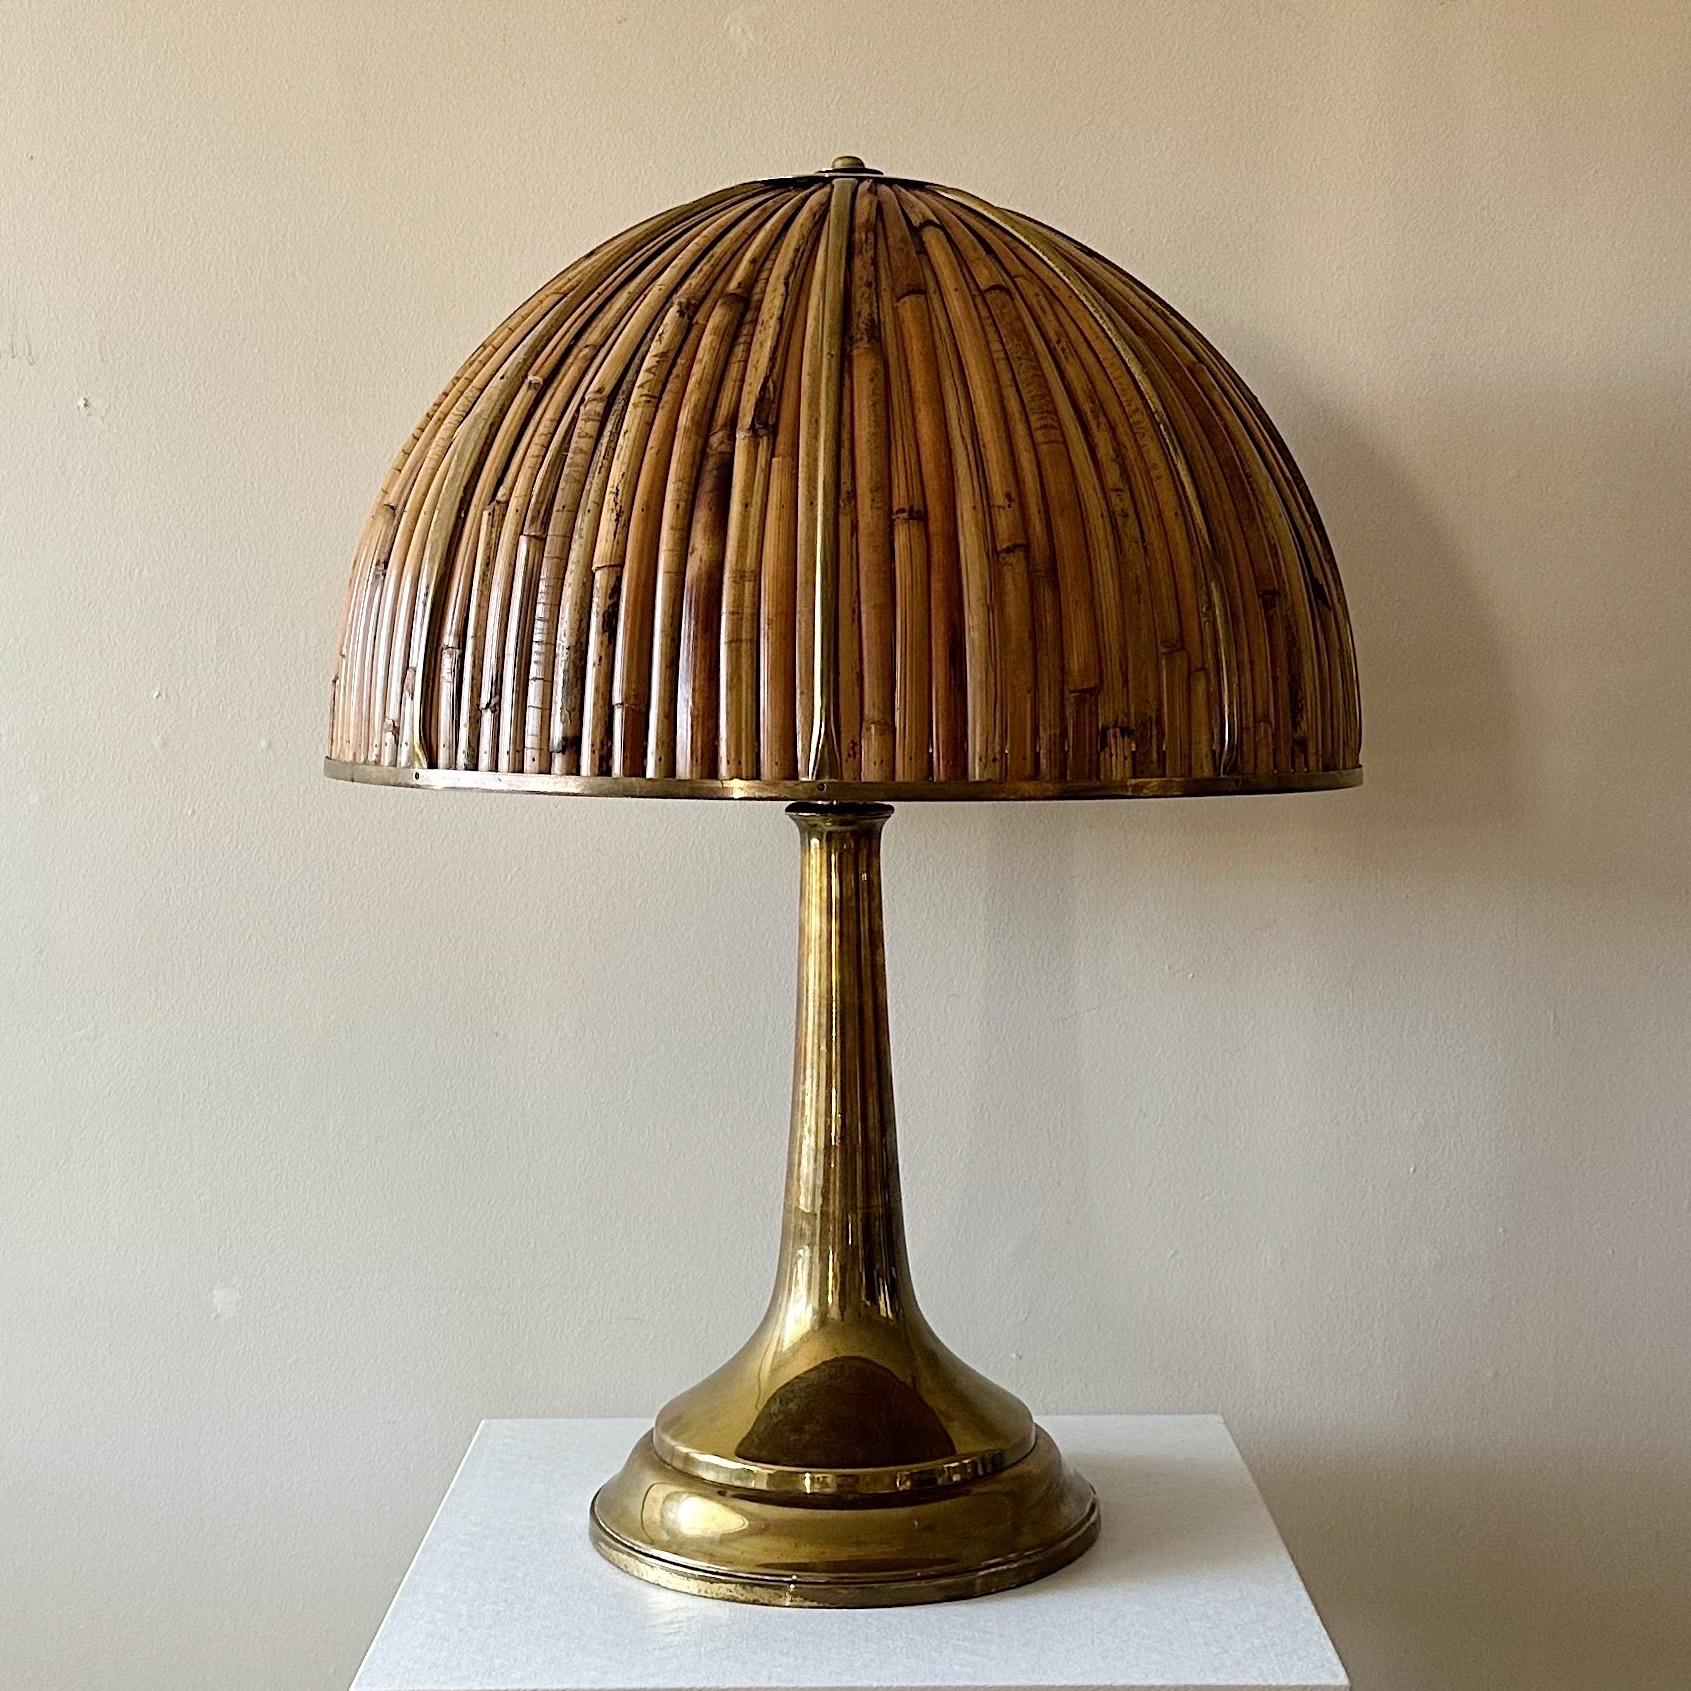 Gabriella Crespi Large Fungo Table Lamp, Rising Sun Series, 1973, Italie. Il s'agit de la plus grande lampe de table 